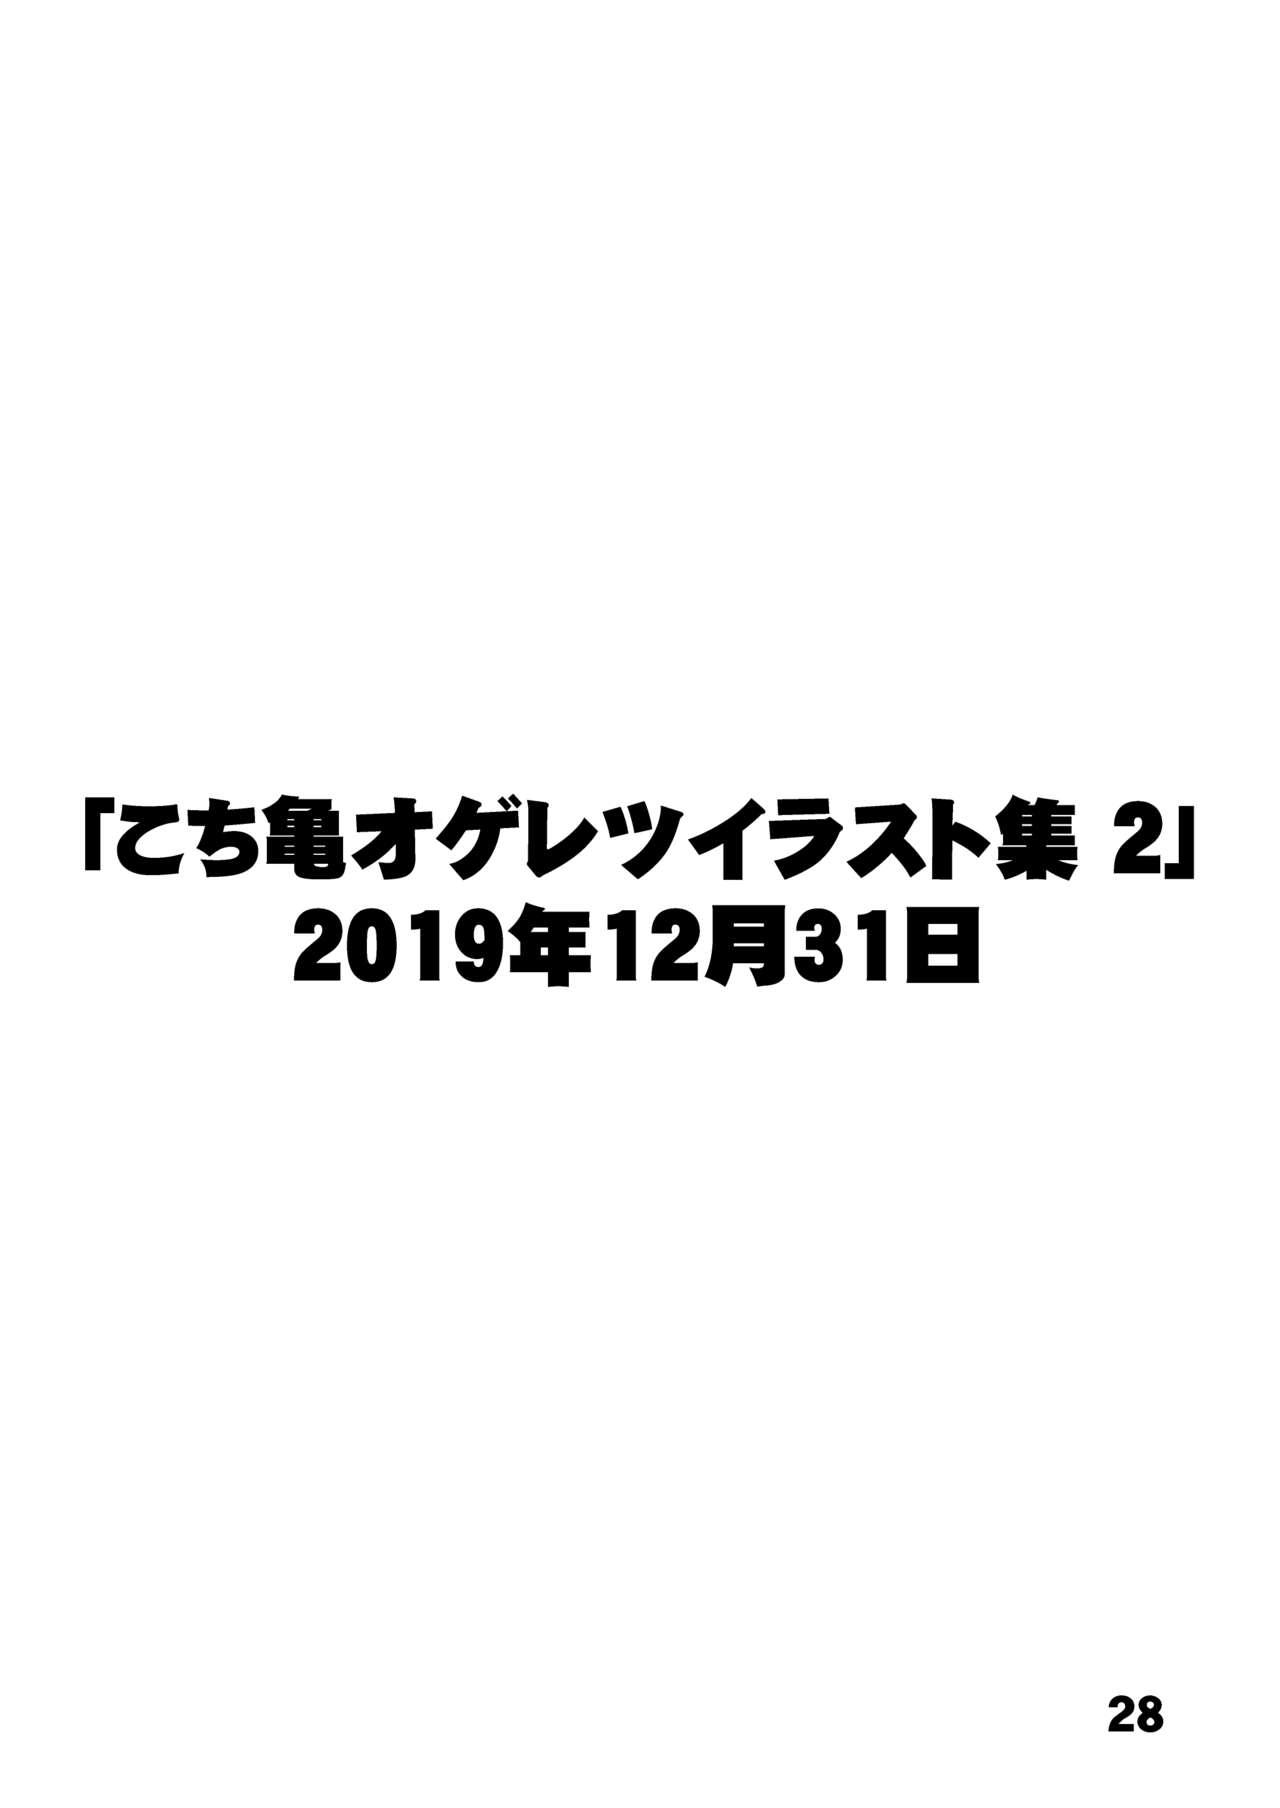 こ○亀オゲレツイラスト集 1+2 26